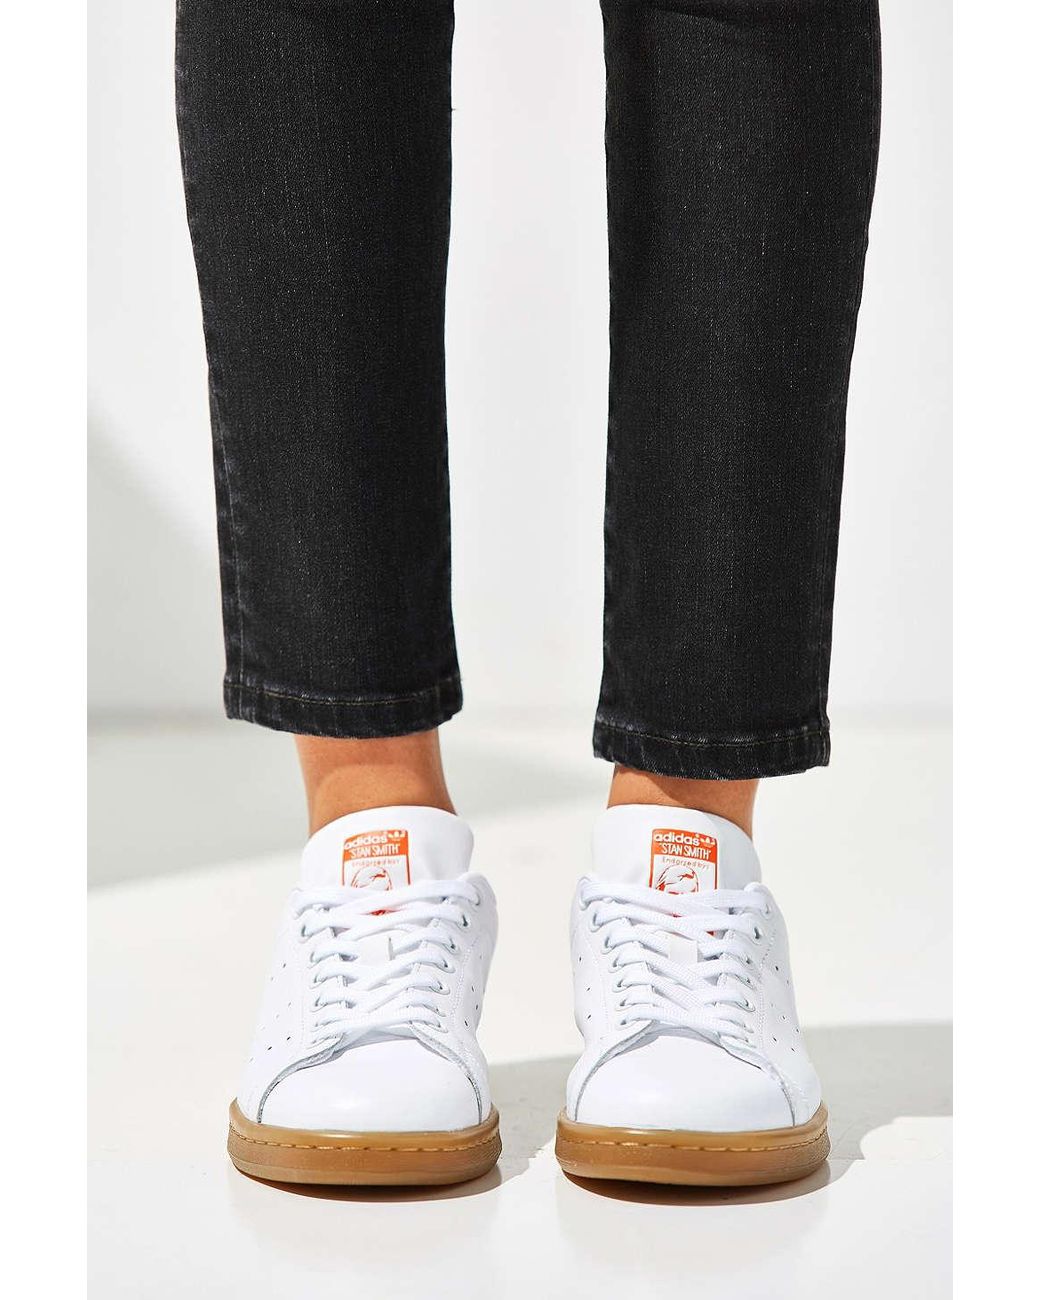 adidas Originals Originals Stan Smith Gum Sole Sneaker in Orange | Lyst